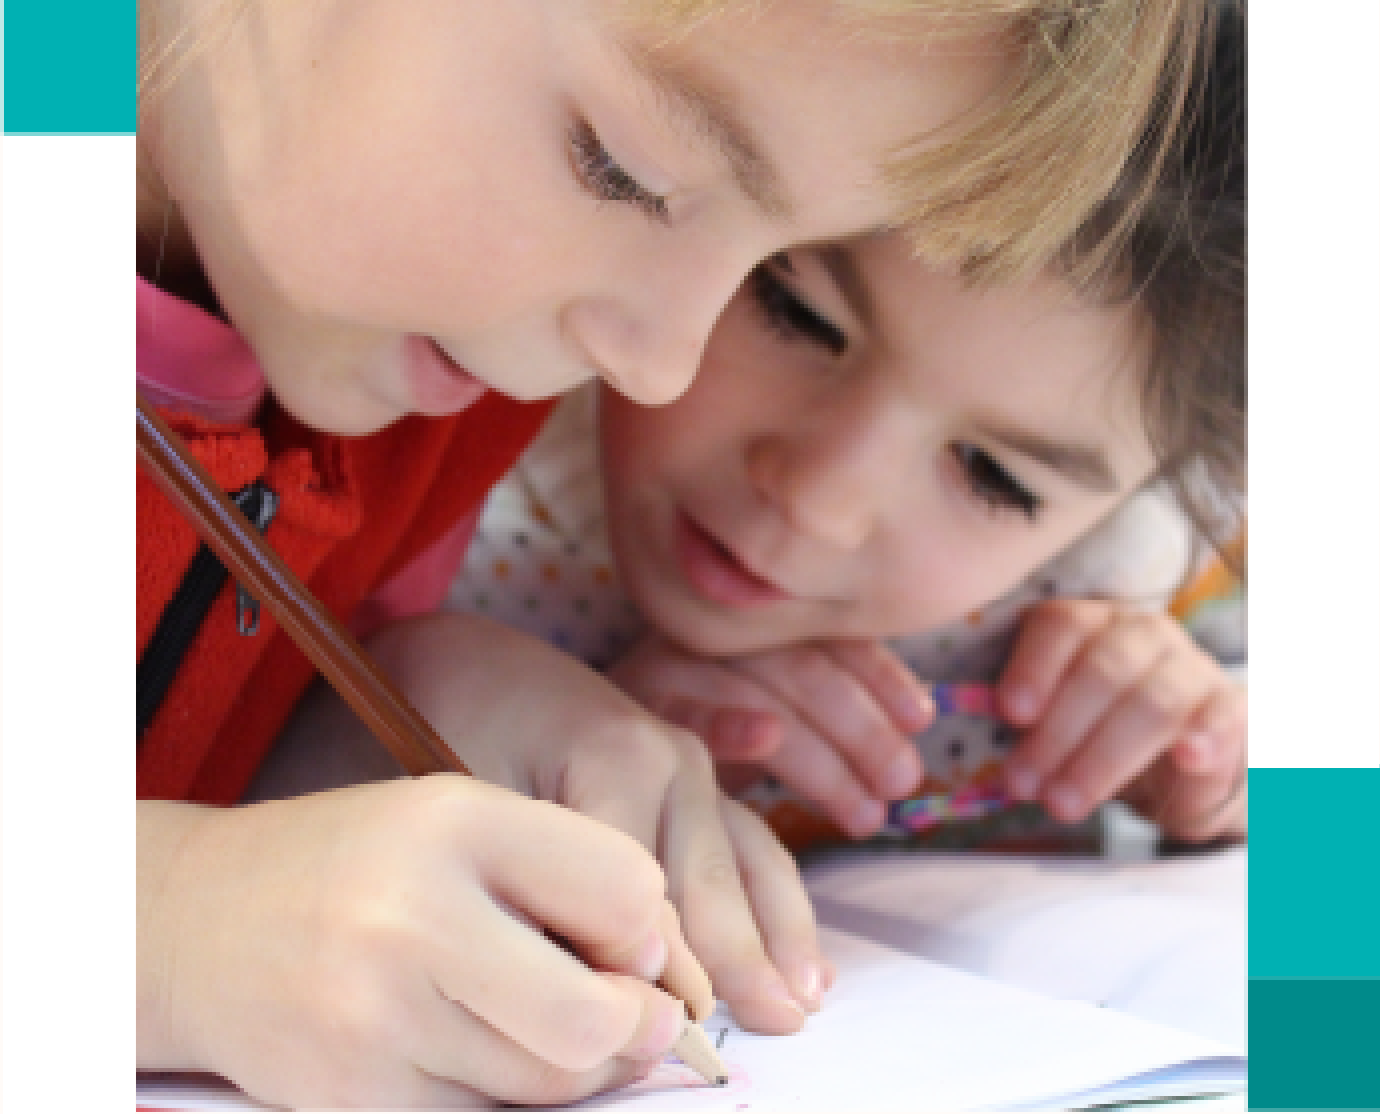 Two children doing homework